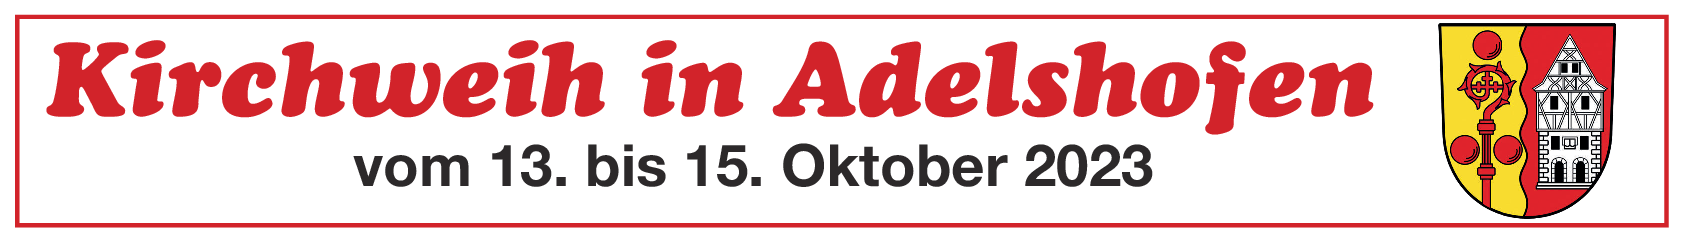 Kirchweih in Adelshofen vom 13. bis 15. Oktober: Grußwort des Bürgermeisters